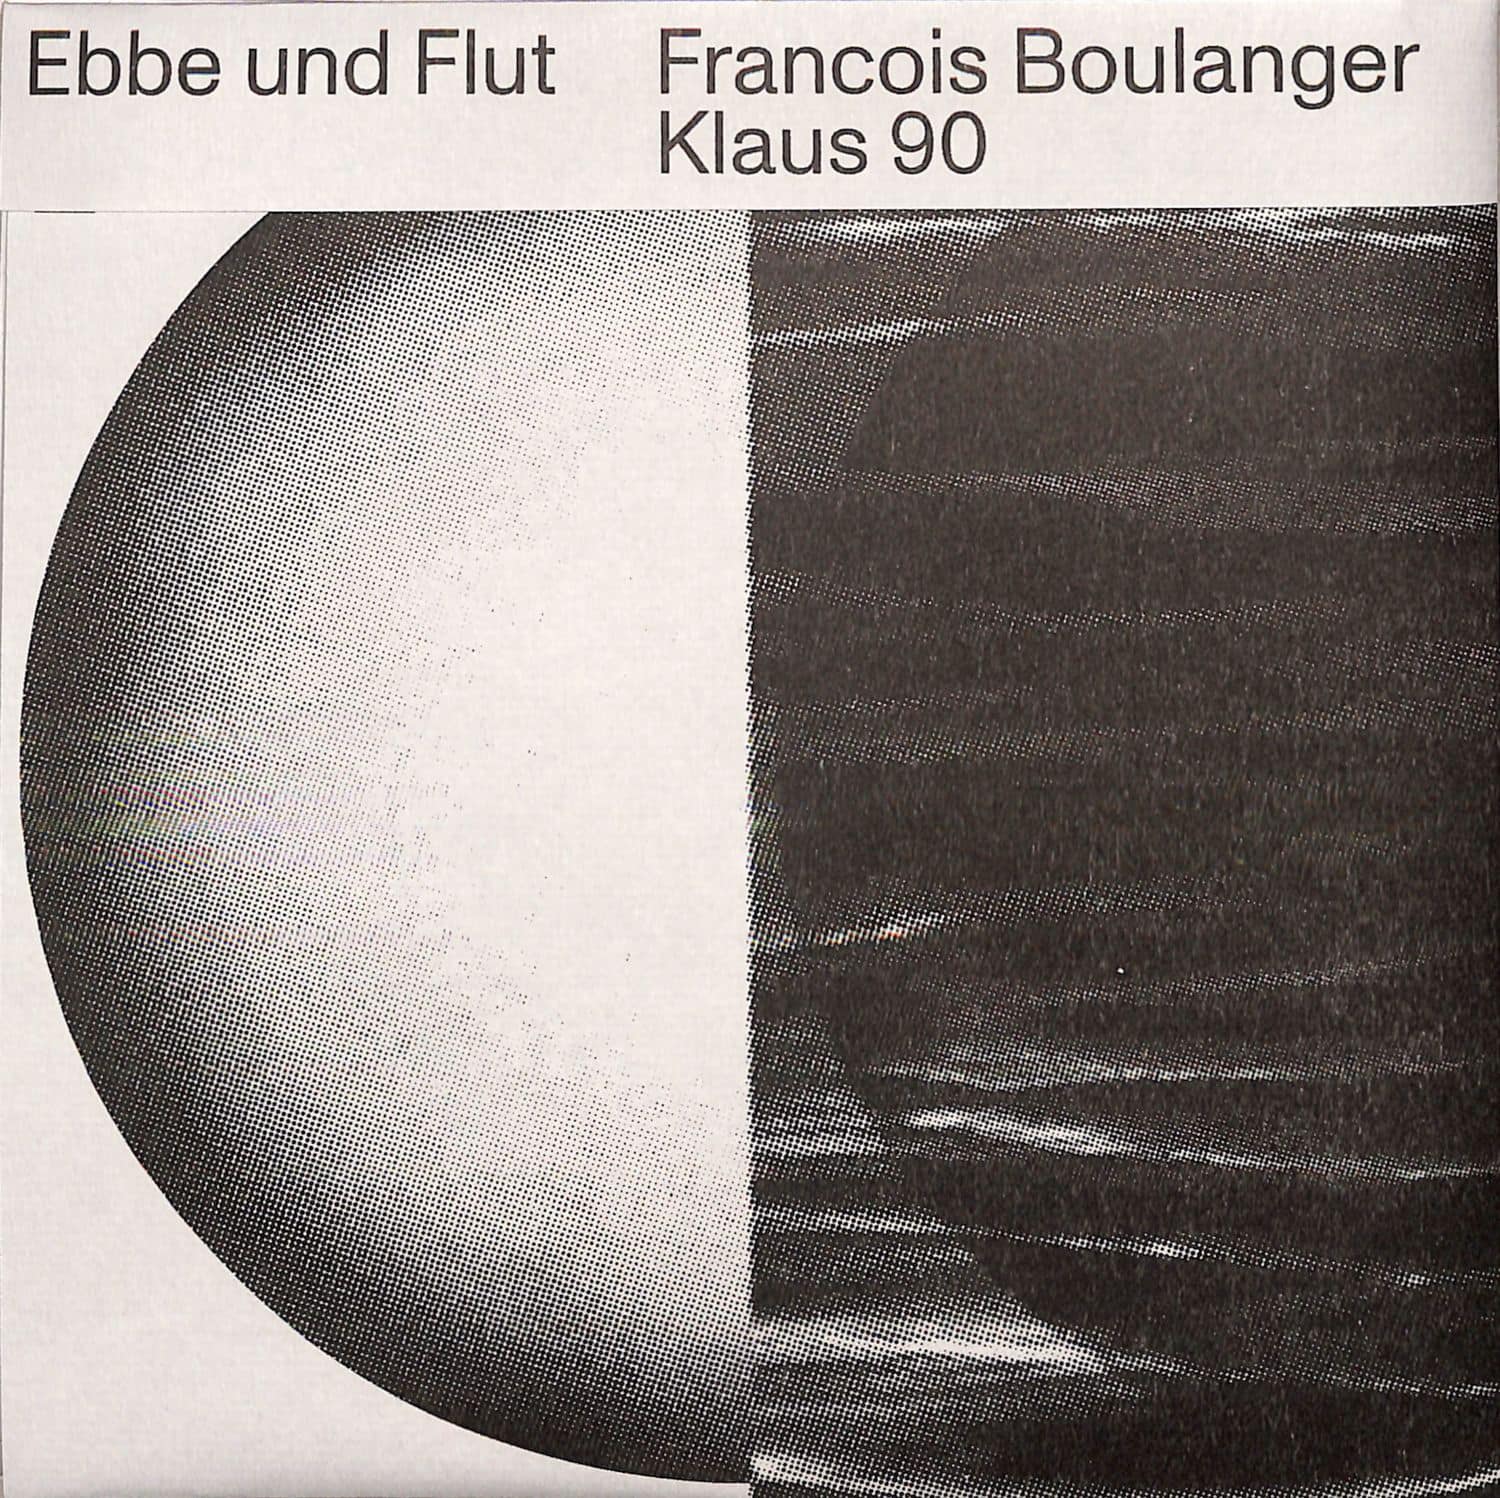 MC Klaus 90, Francois Boulanger - EBBE UND FLUT 